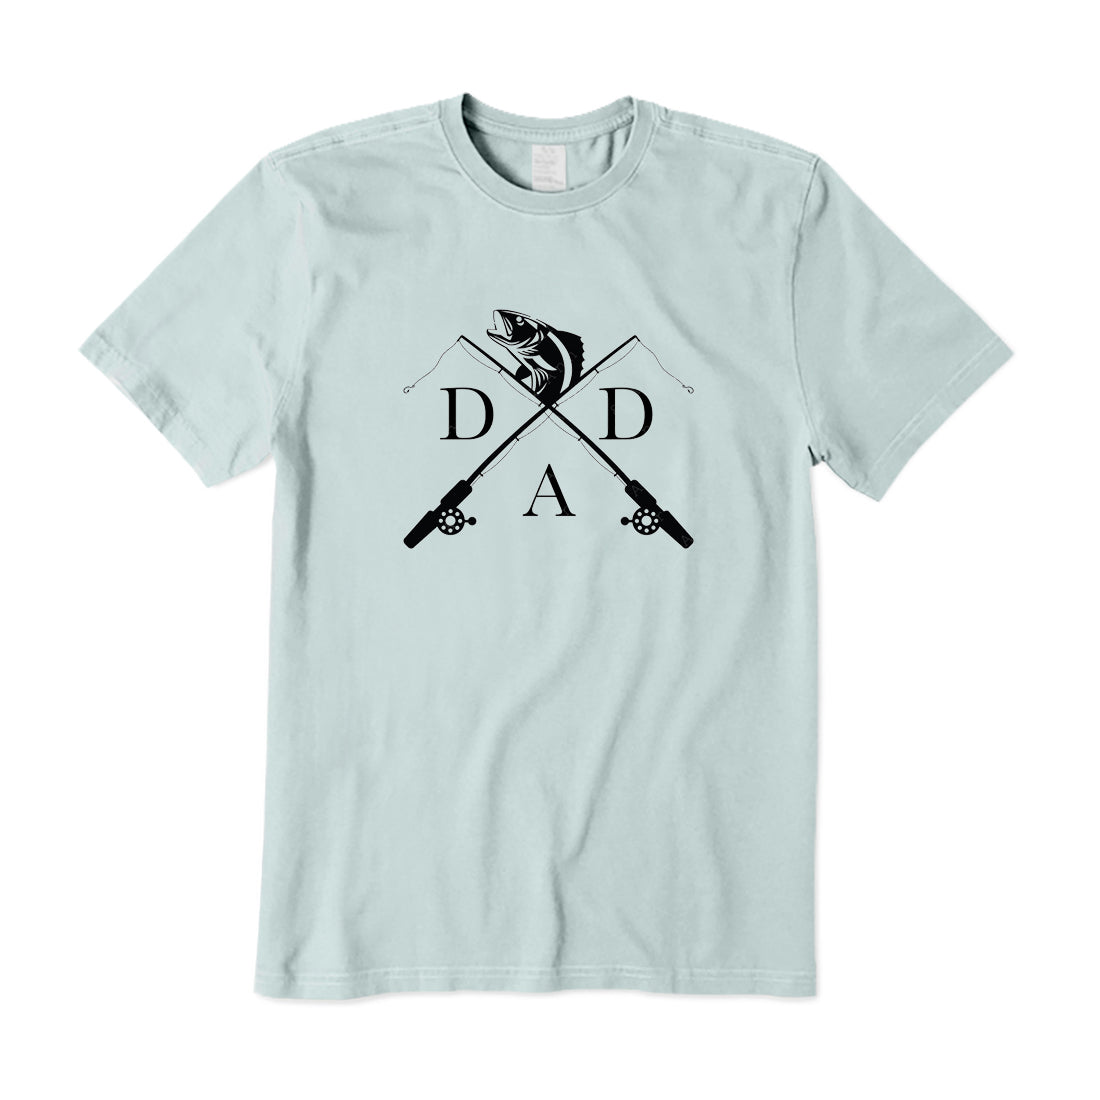 Fishing Dad T-Shirt